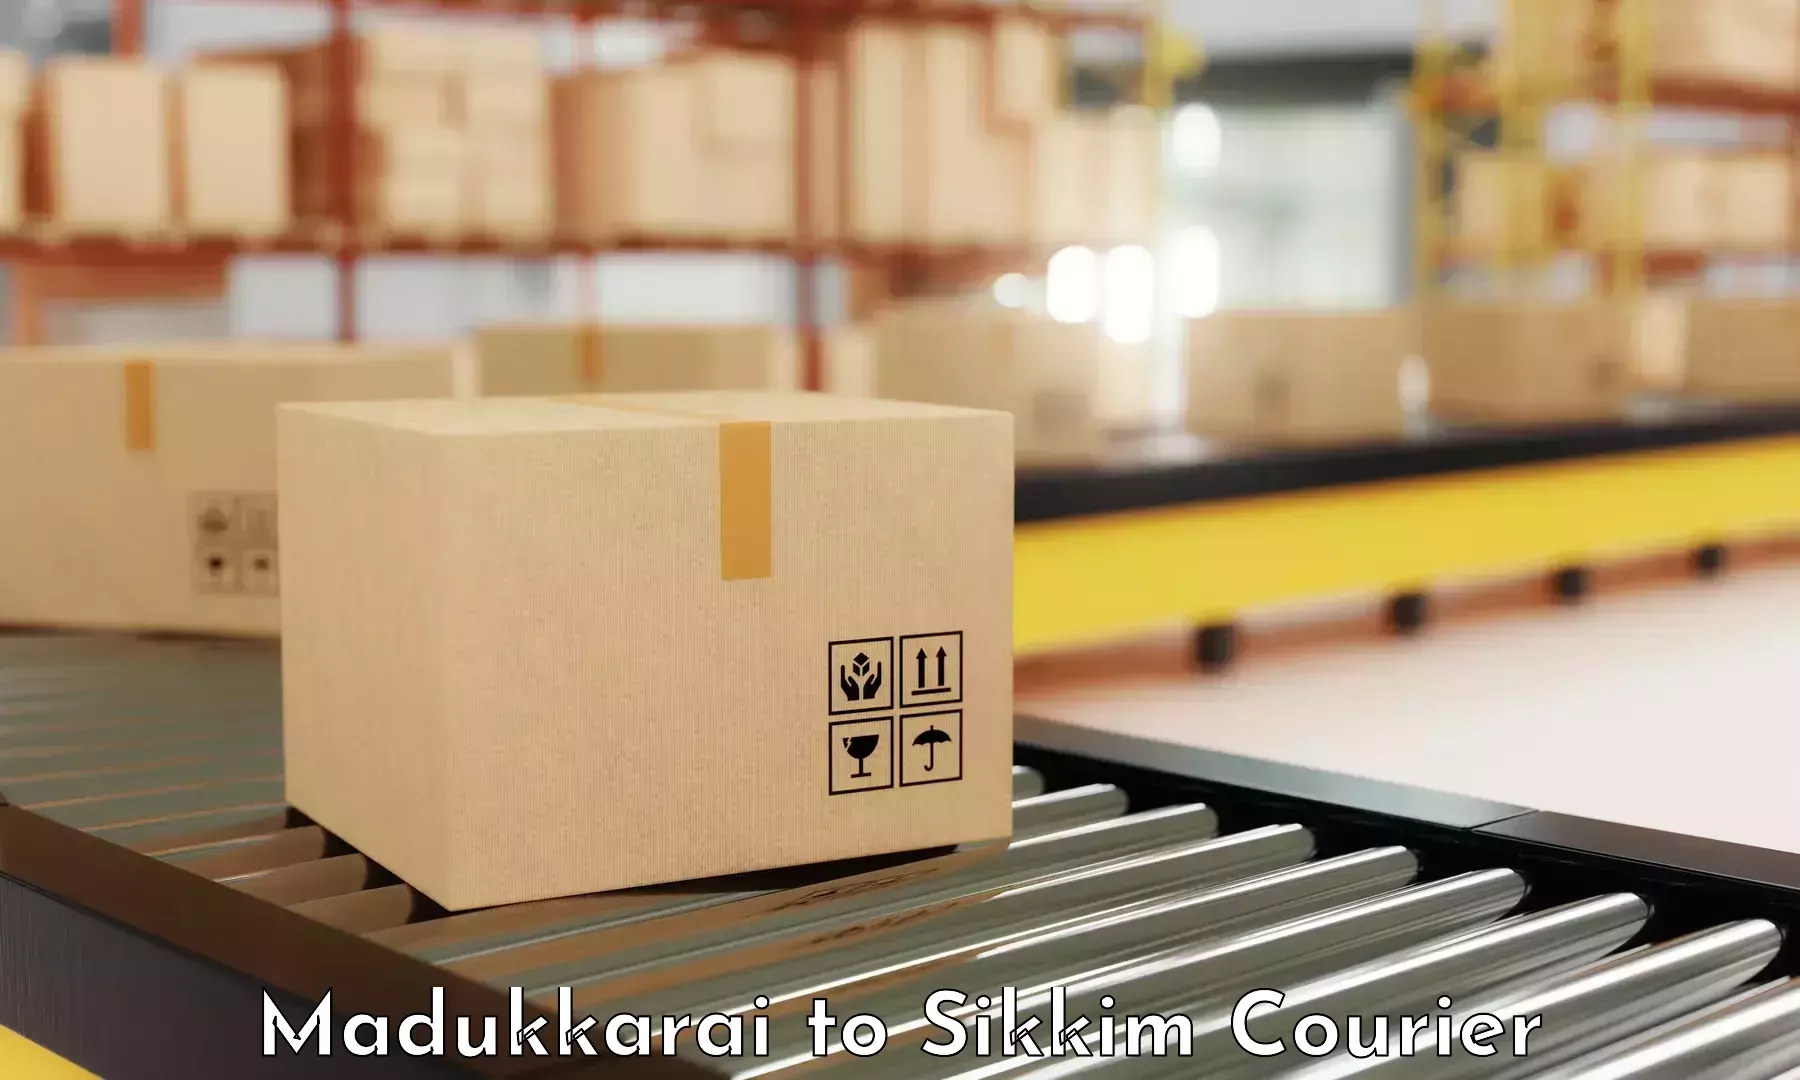 Innovative shipping solutions Madukkarai to Rangpo